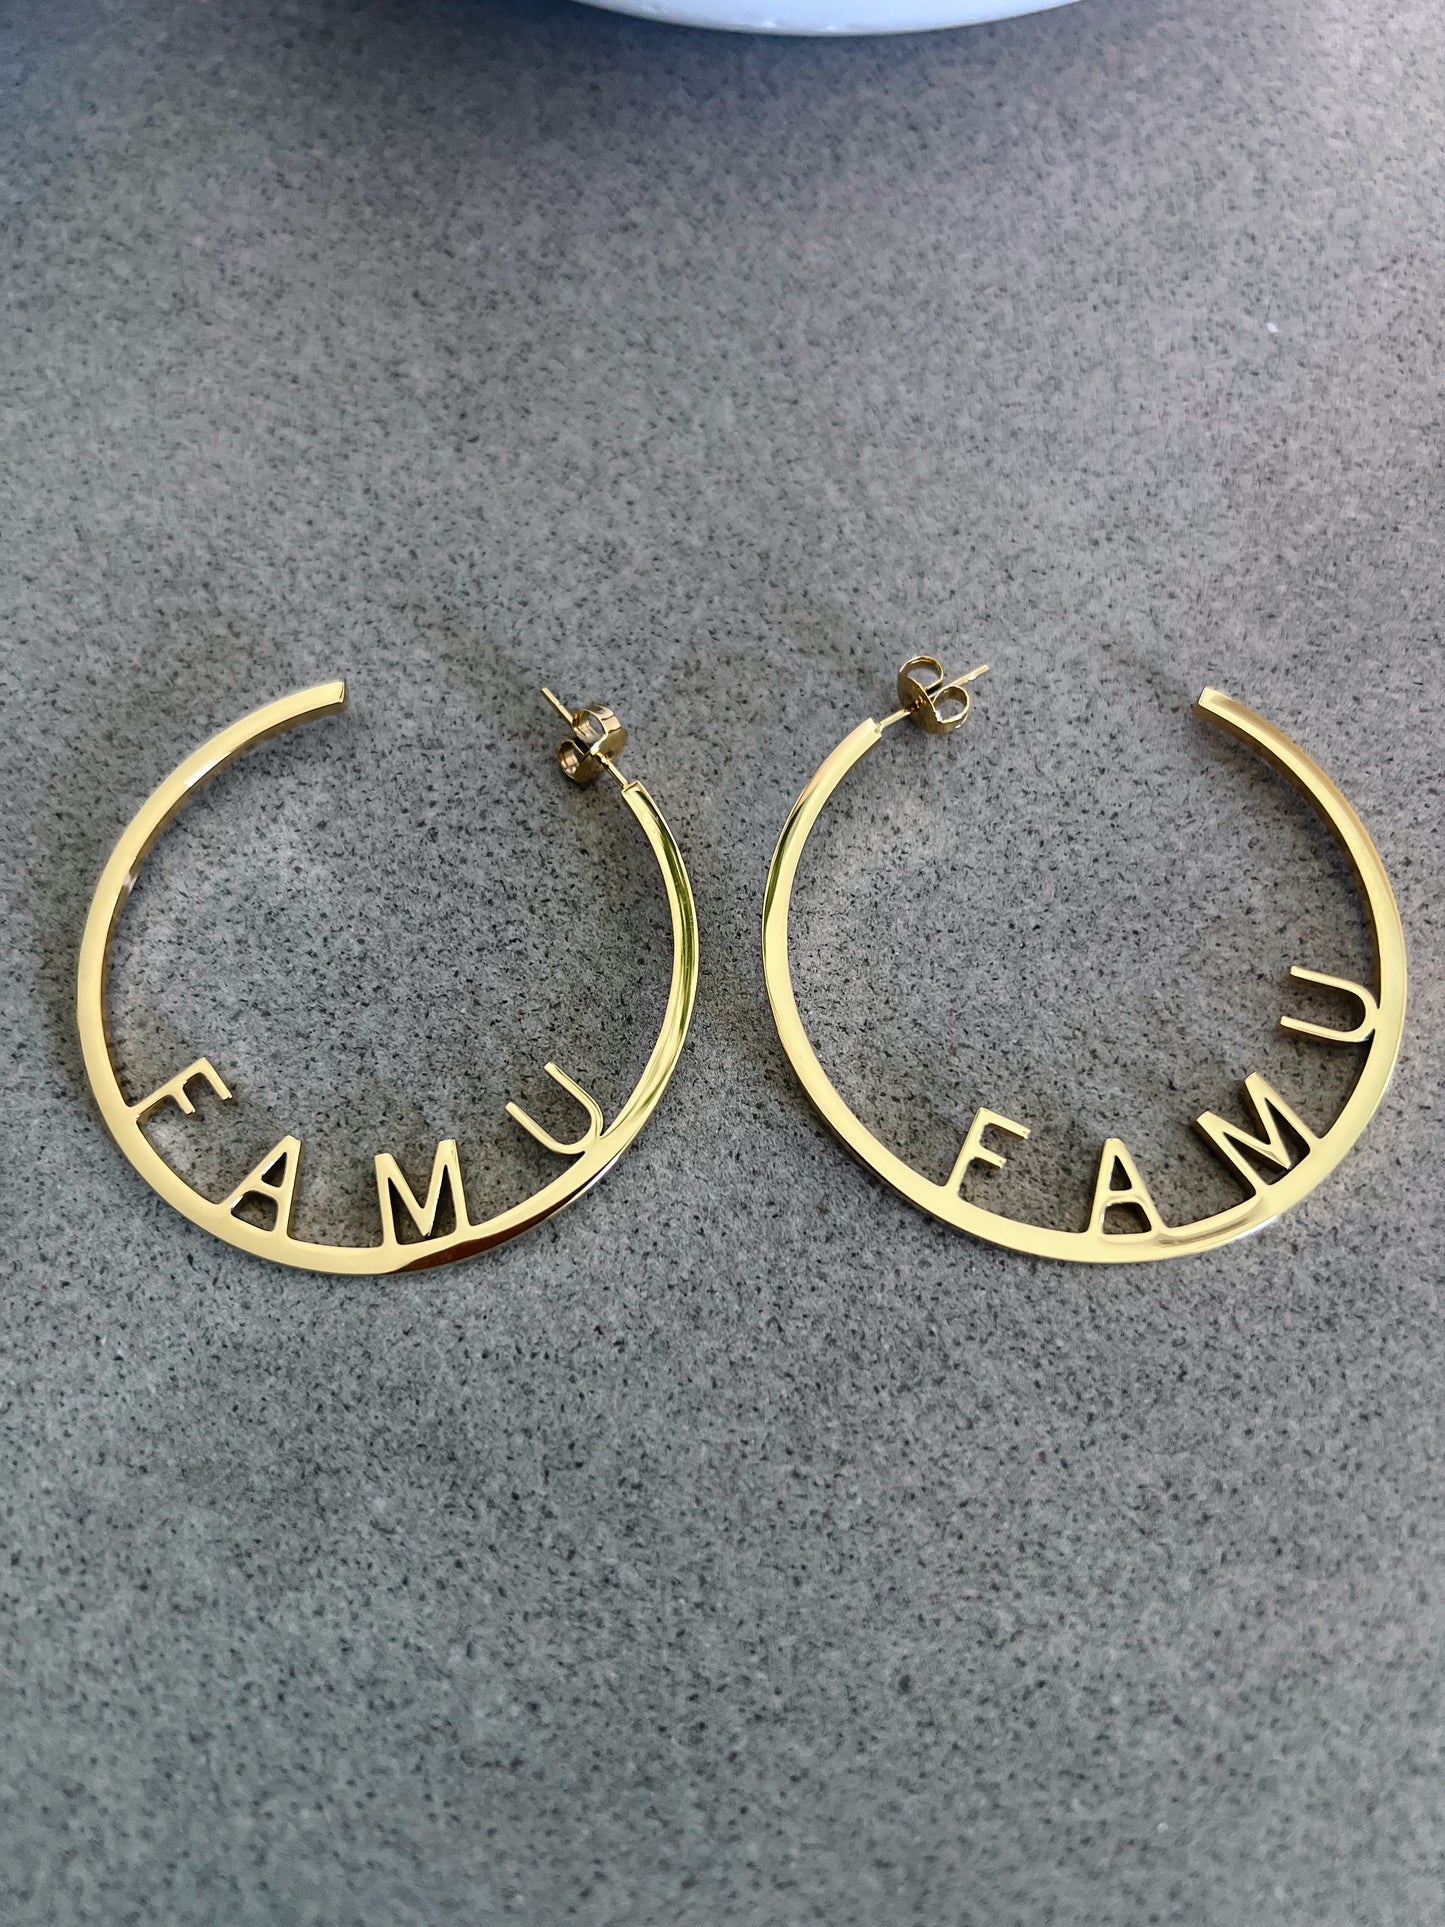 FAMU Earrings